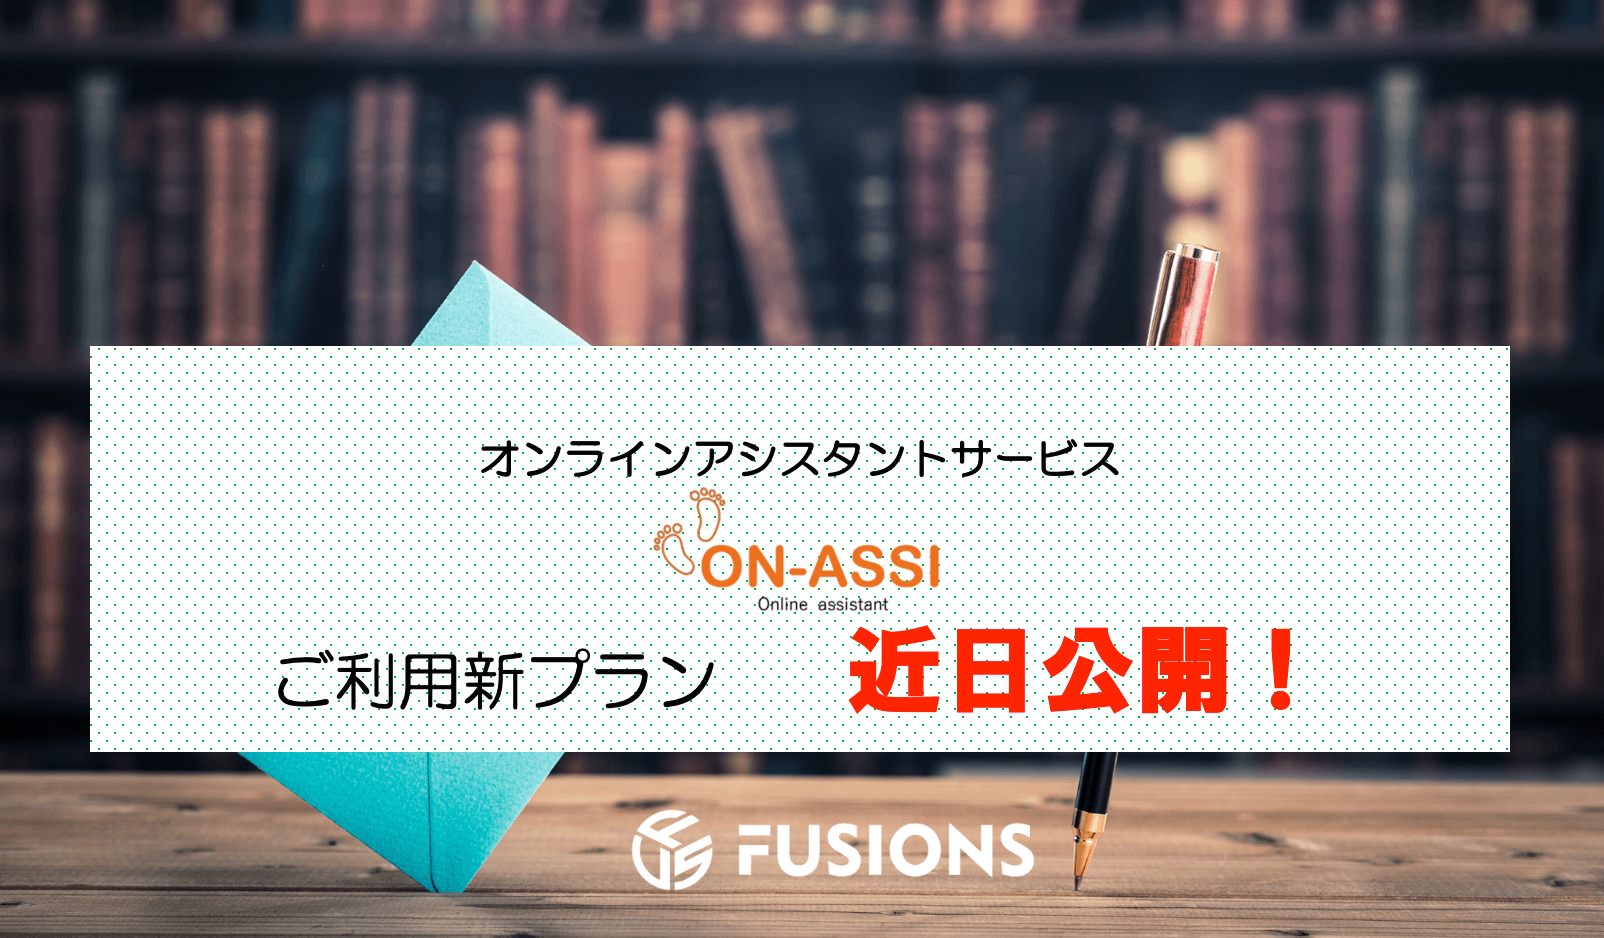 Featured image for “当社オンラインアシスタント　ON-ASSI  新ご利用プラン　近日公開！”